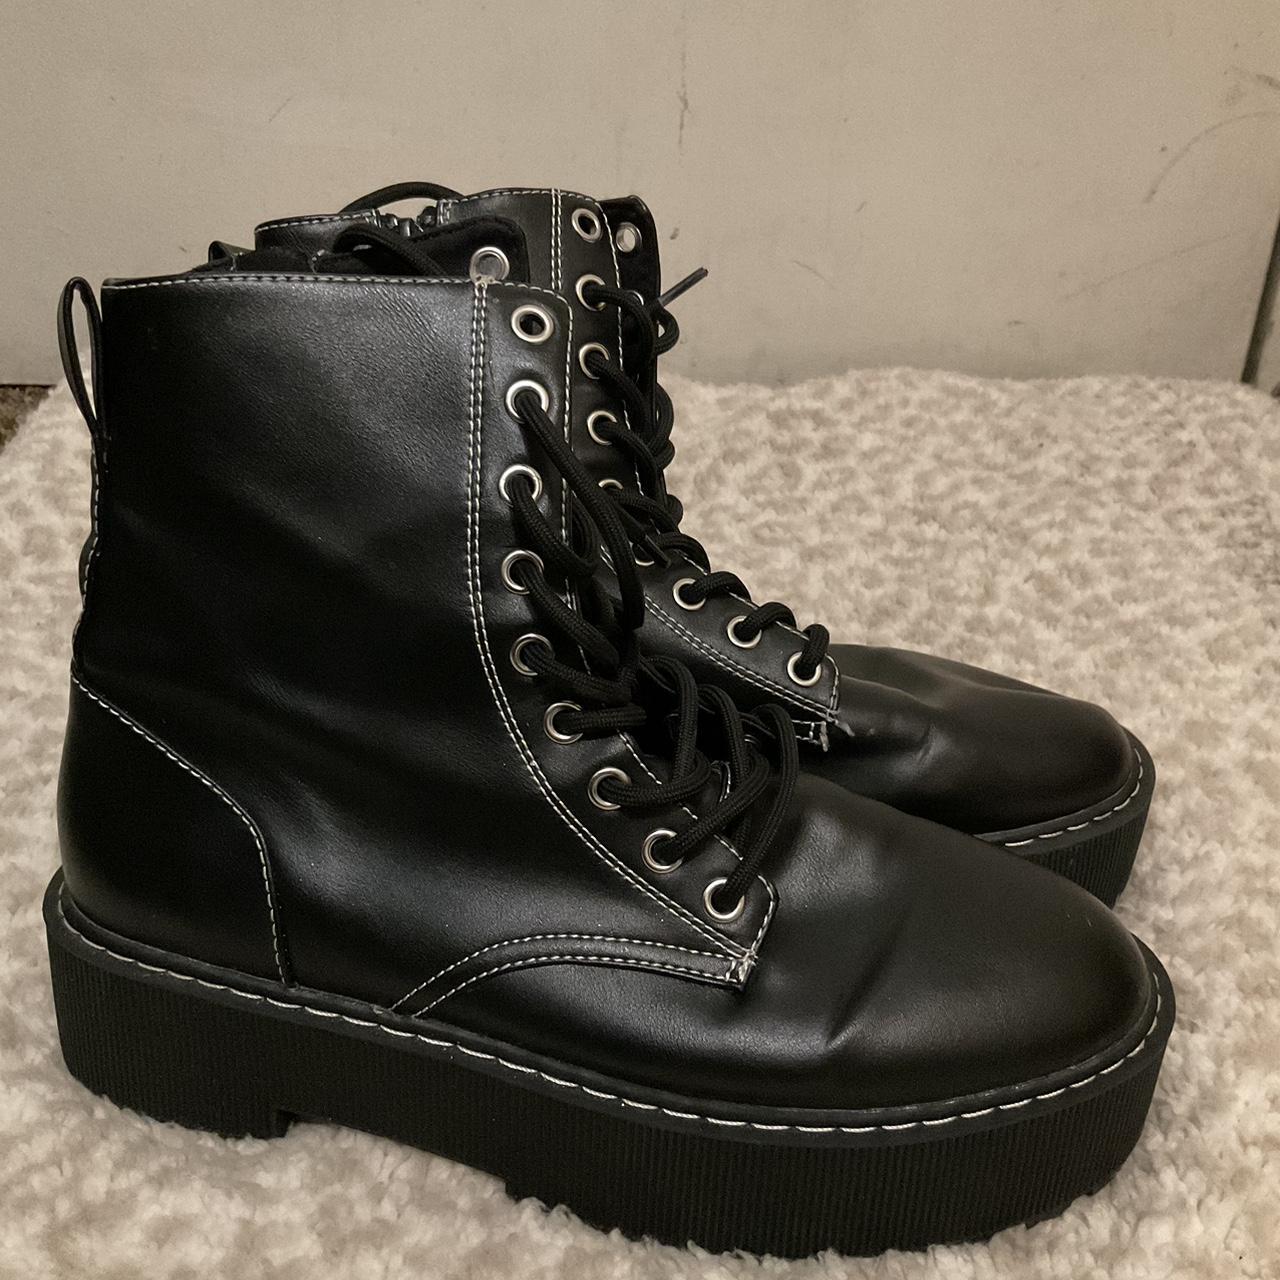 Black combat boots - Depop